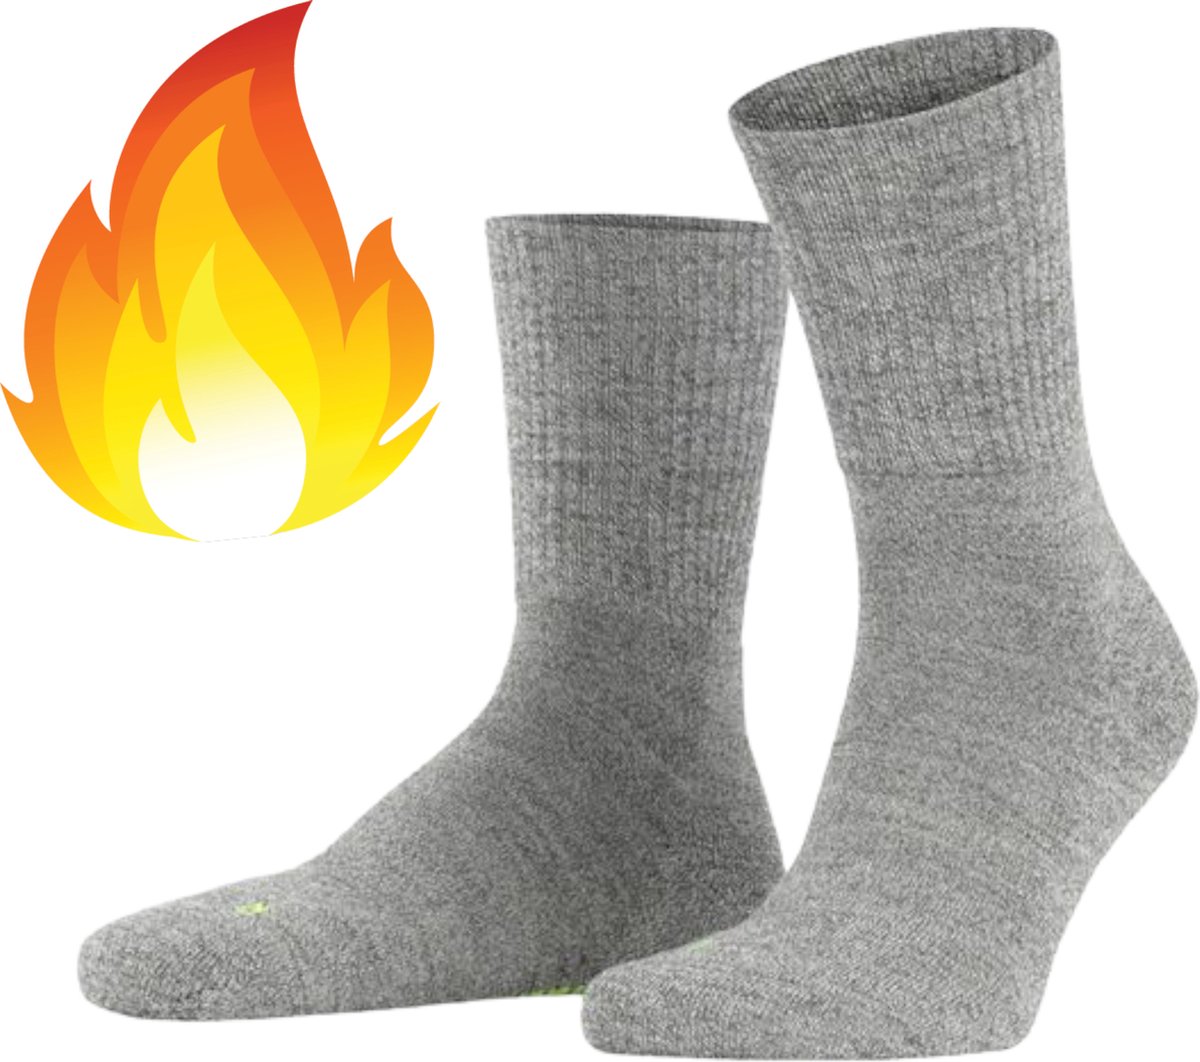 Chibaa - Sport Thermo Sok - Thermisch - Warm Sock - Wandelsokken - Winter Ski sokken - Koud - Grijs - L/XL - 42-46